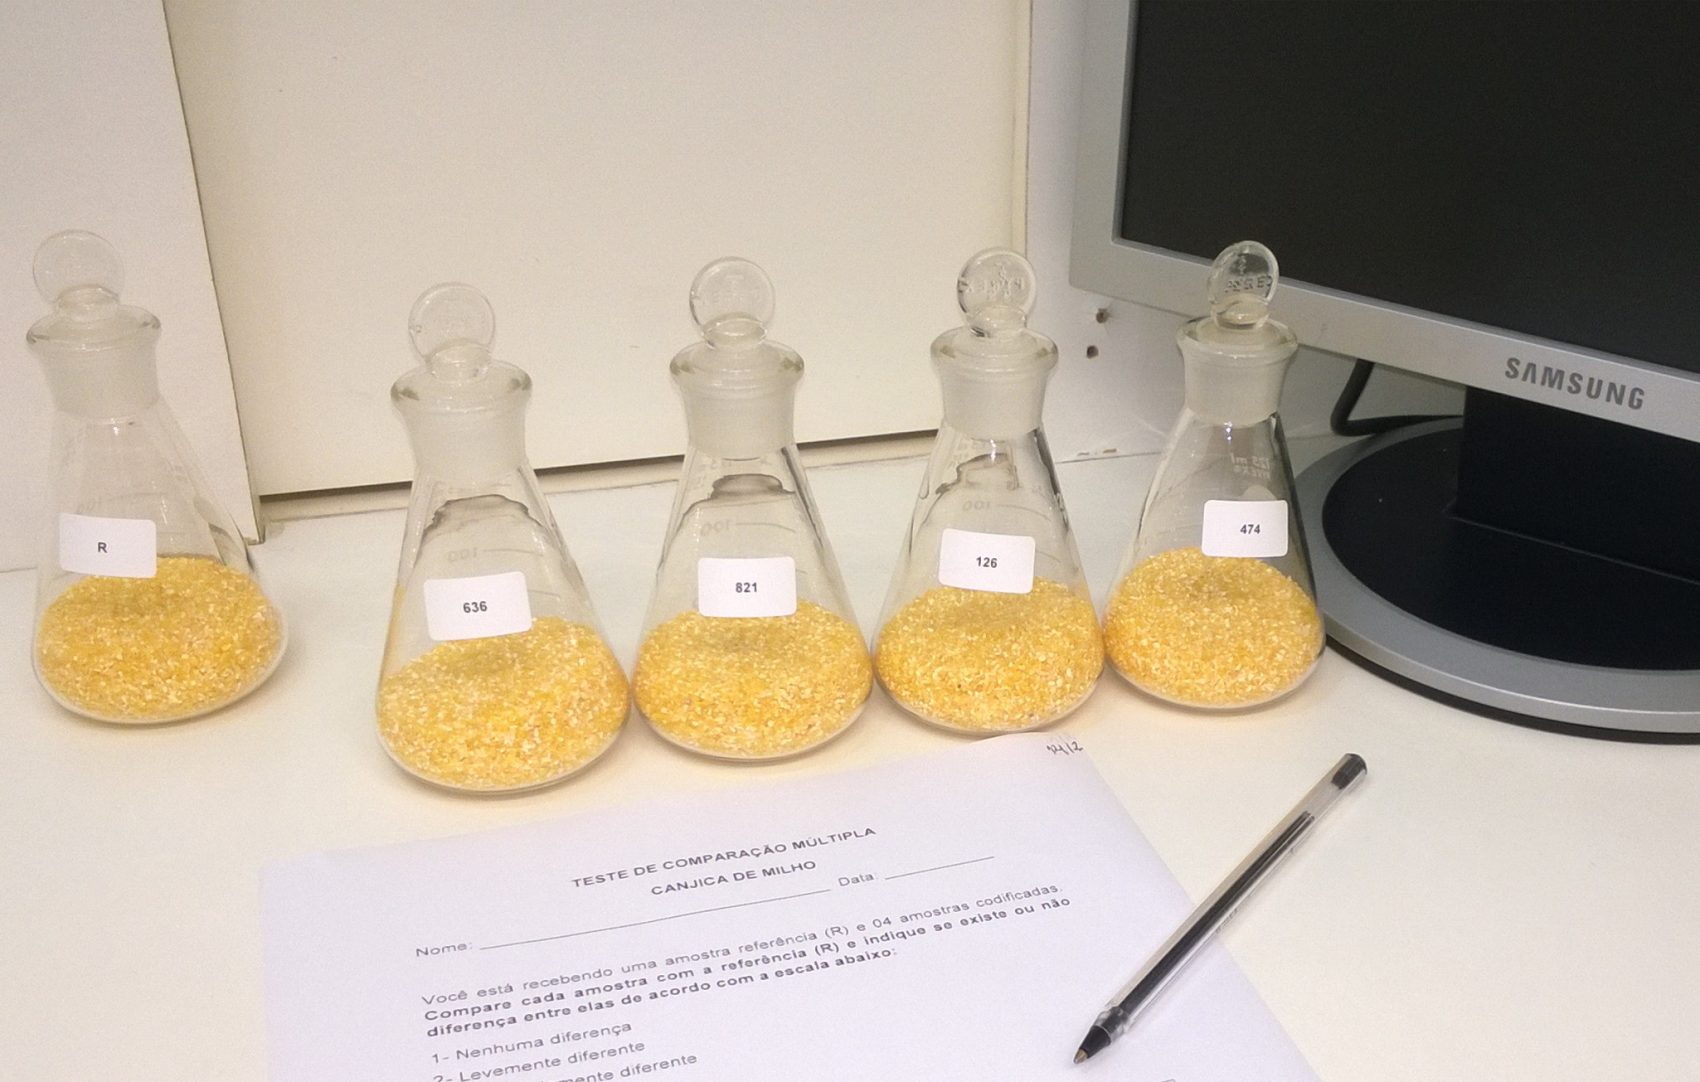 Grãos de milho separados para teste: pesquisadores da Embrapa usaram gás de ozônio para eliminar fungas (Foto: Divulgação/Embrapa)